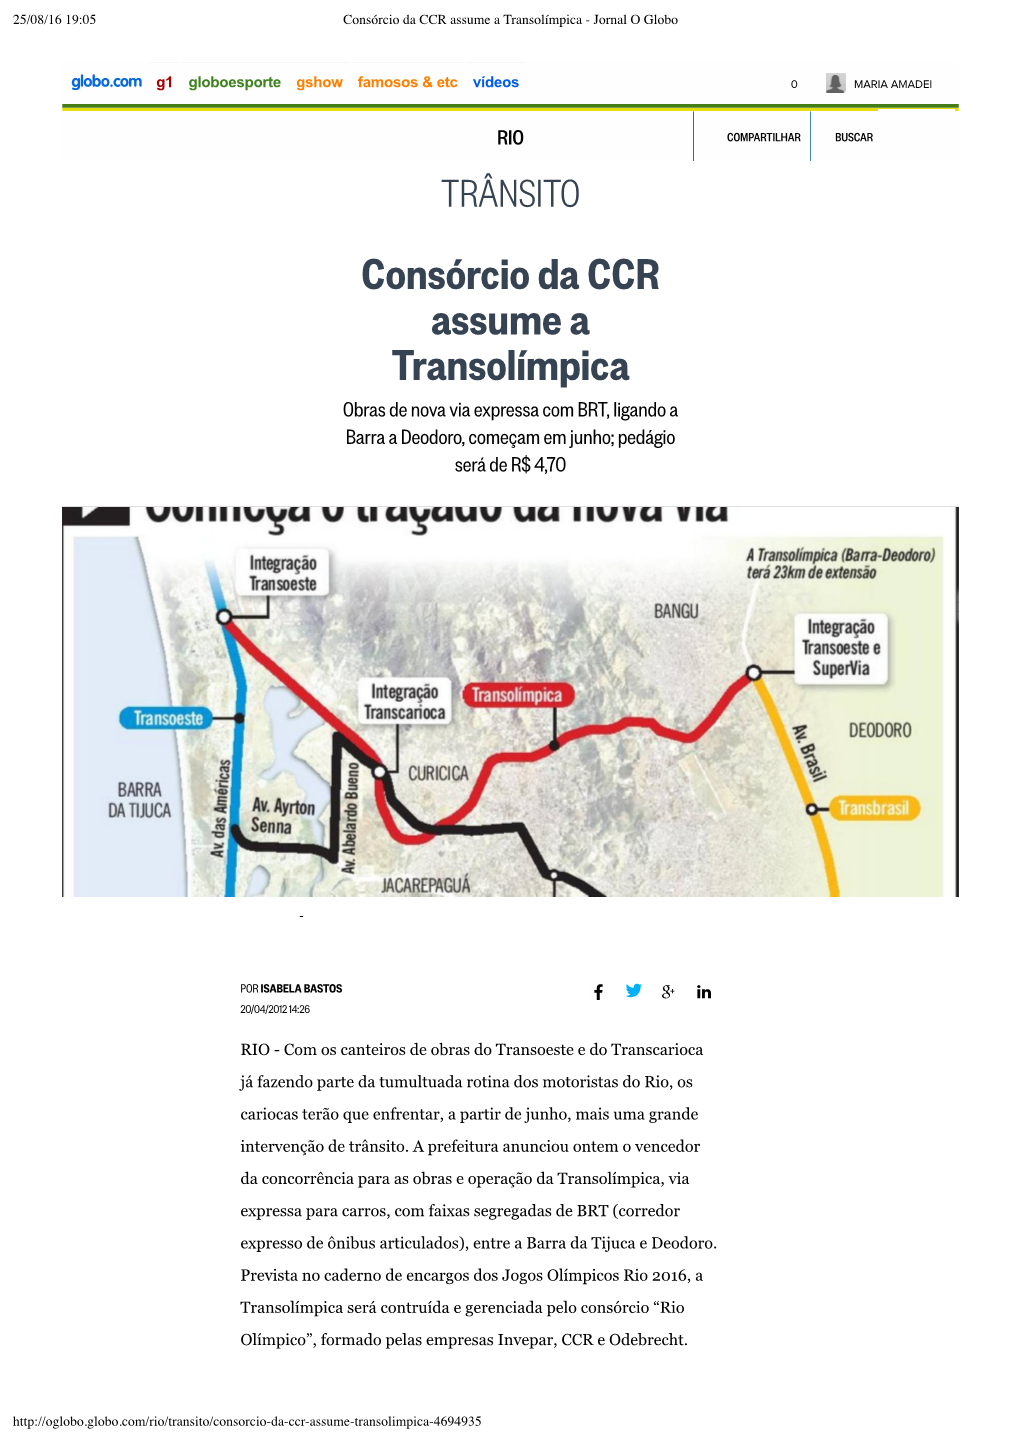 Consórcio Da CCR Assume a Transolímpica - Jornal O Globo